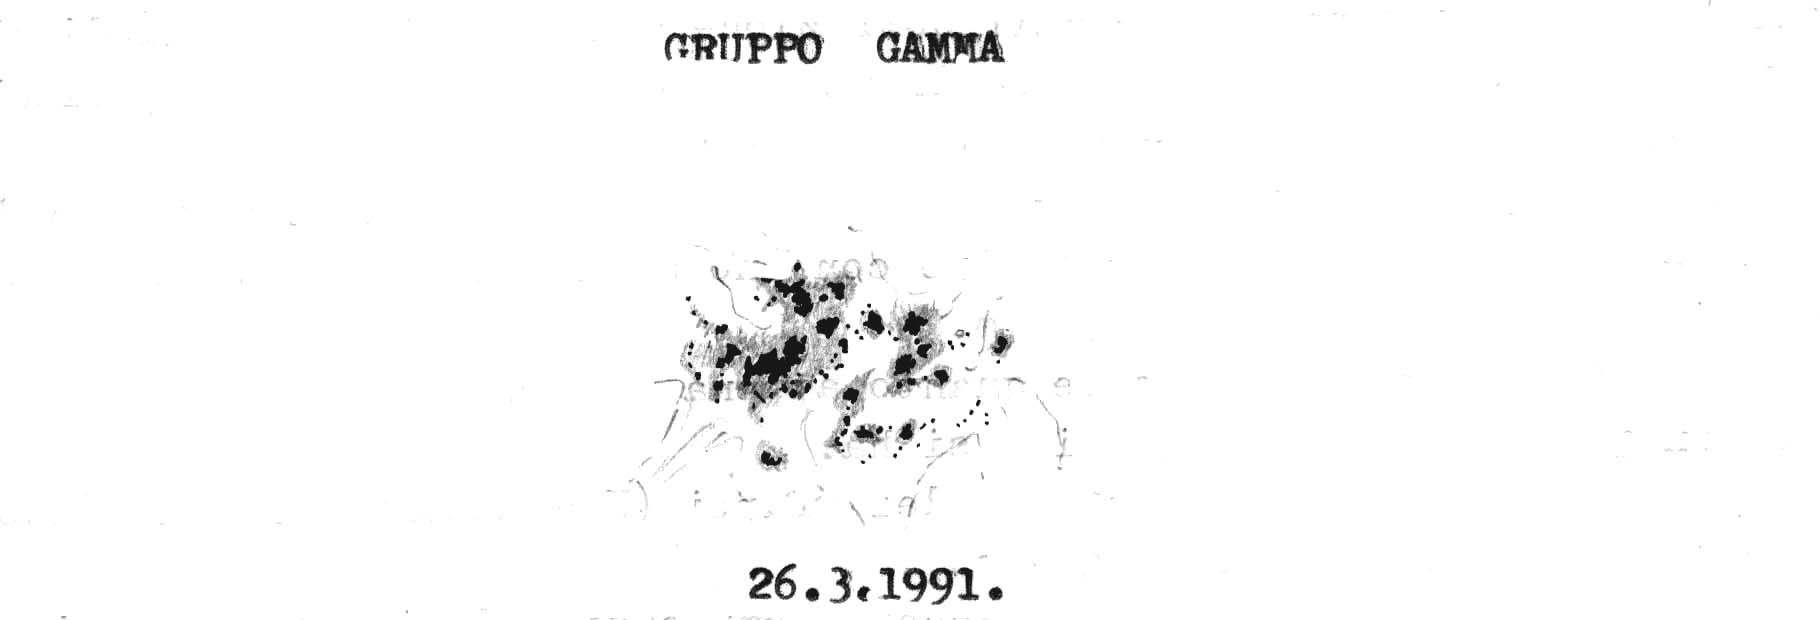 Figura n. 15 – Gruppo gamma